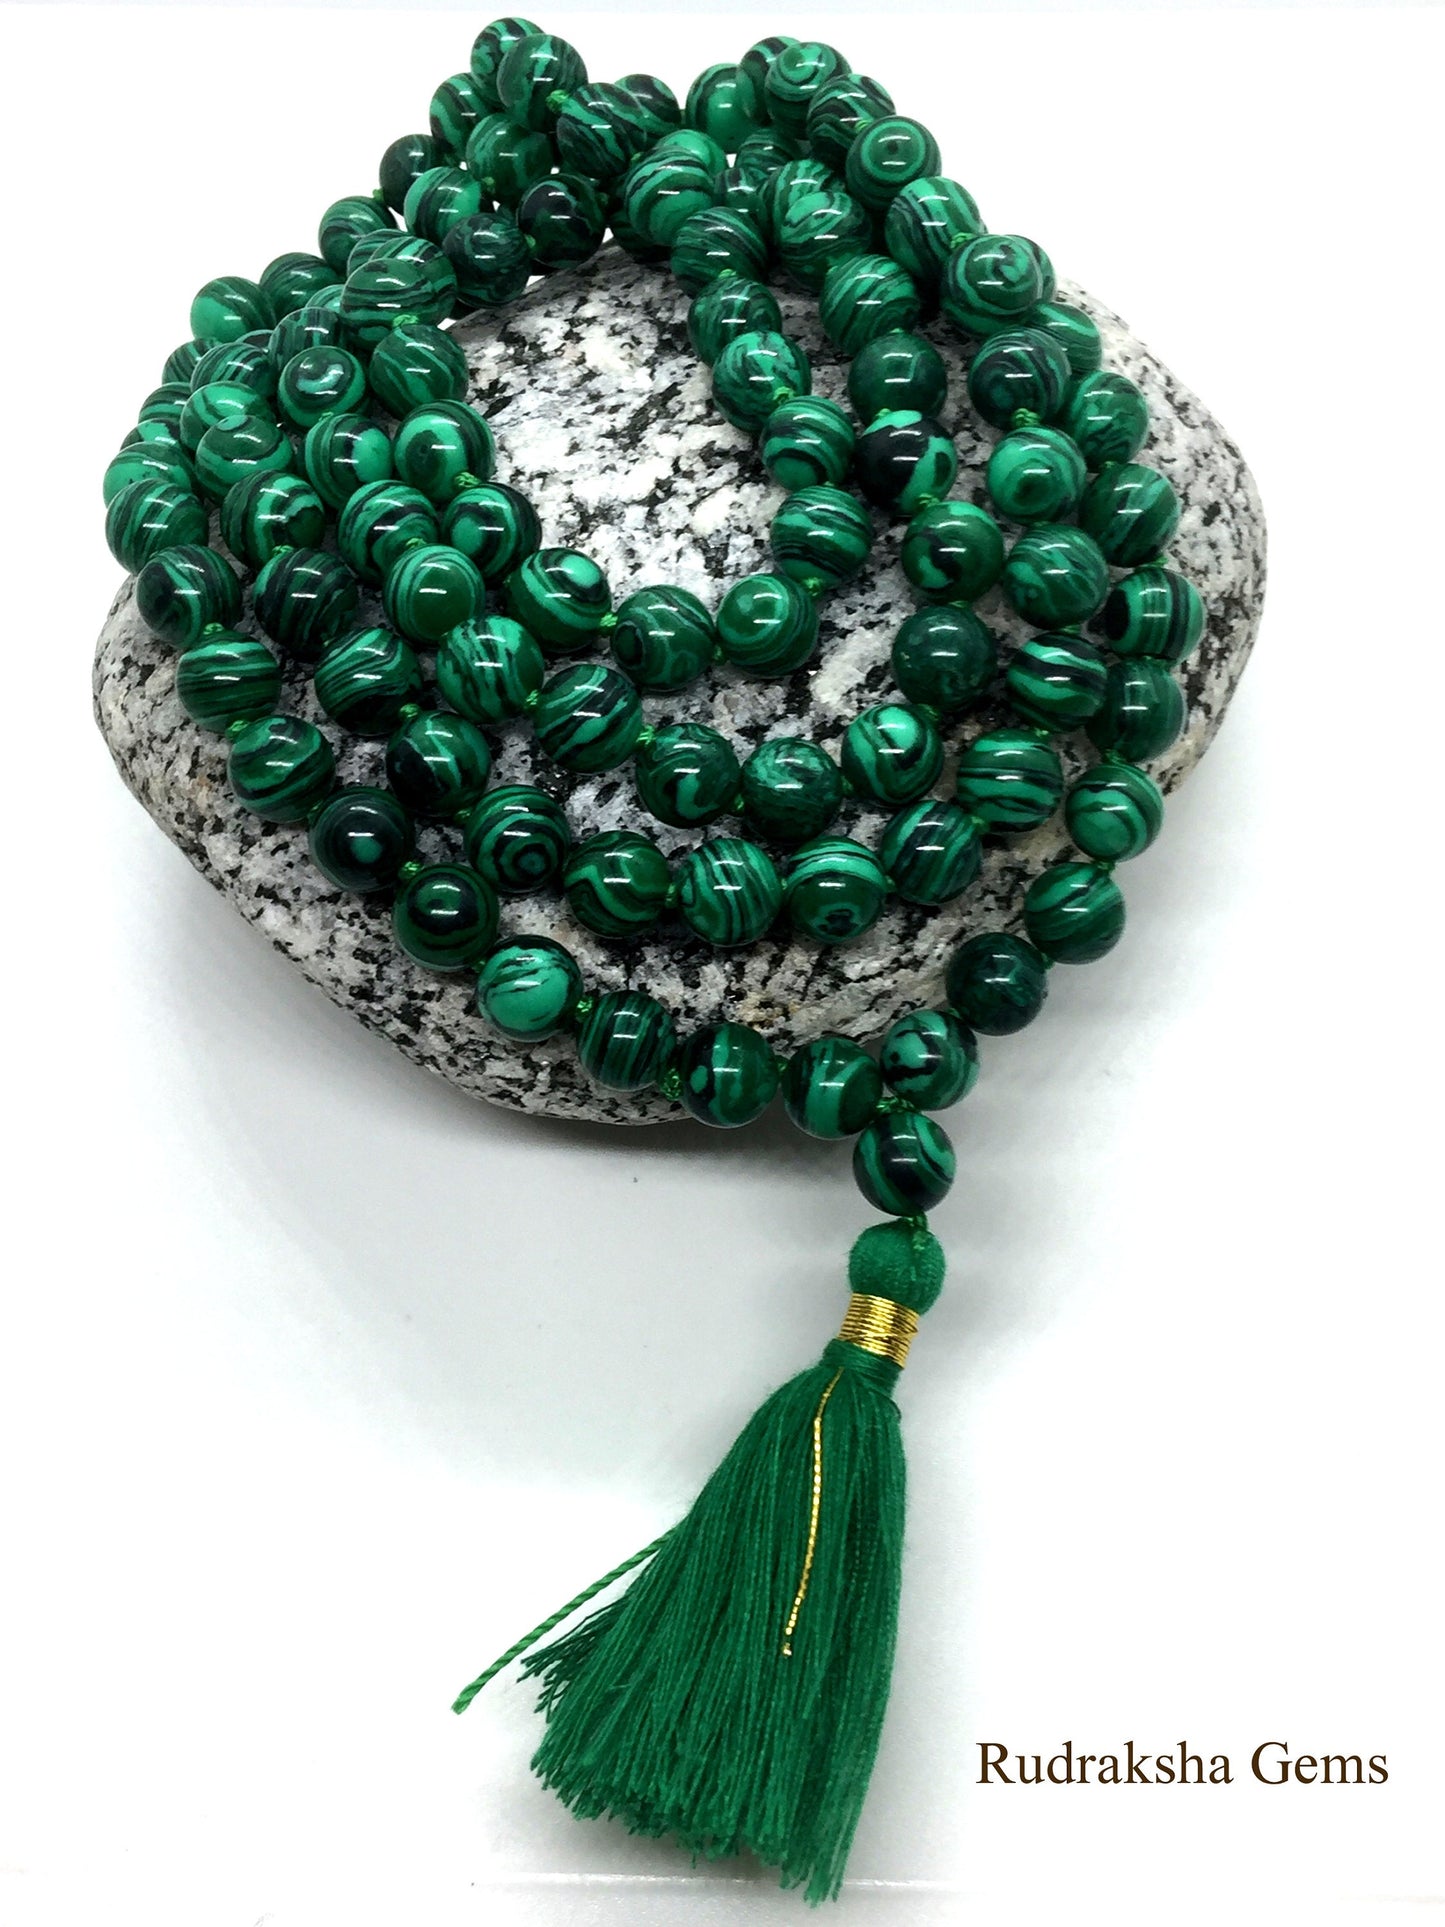 Malachite Japa Mala 108 Beads / Hand knotted Full Mala Necklace / Meditation and Yoga Mala / Heart Chakra Mala Buddhist Prayer Beads Jewelry